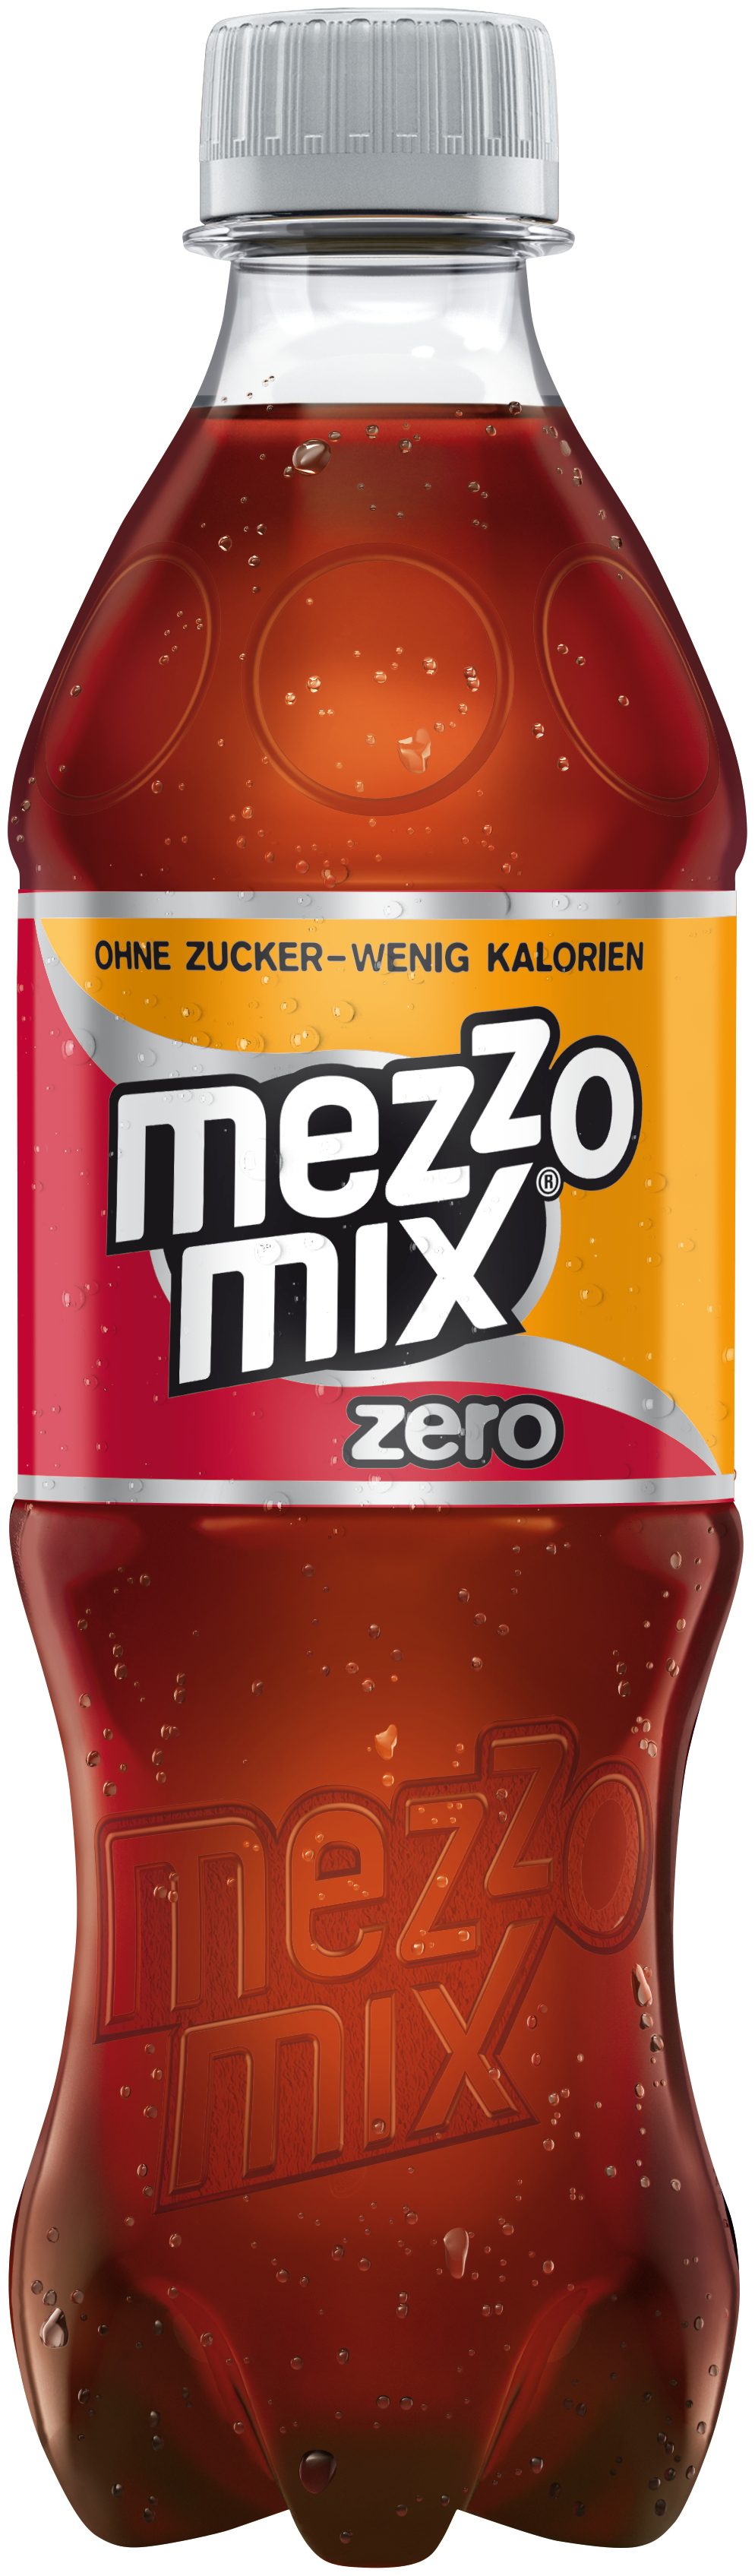 Mezzo Mix Zero 12x0,5L DPG